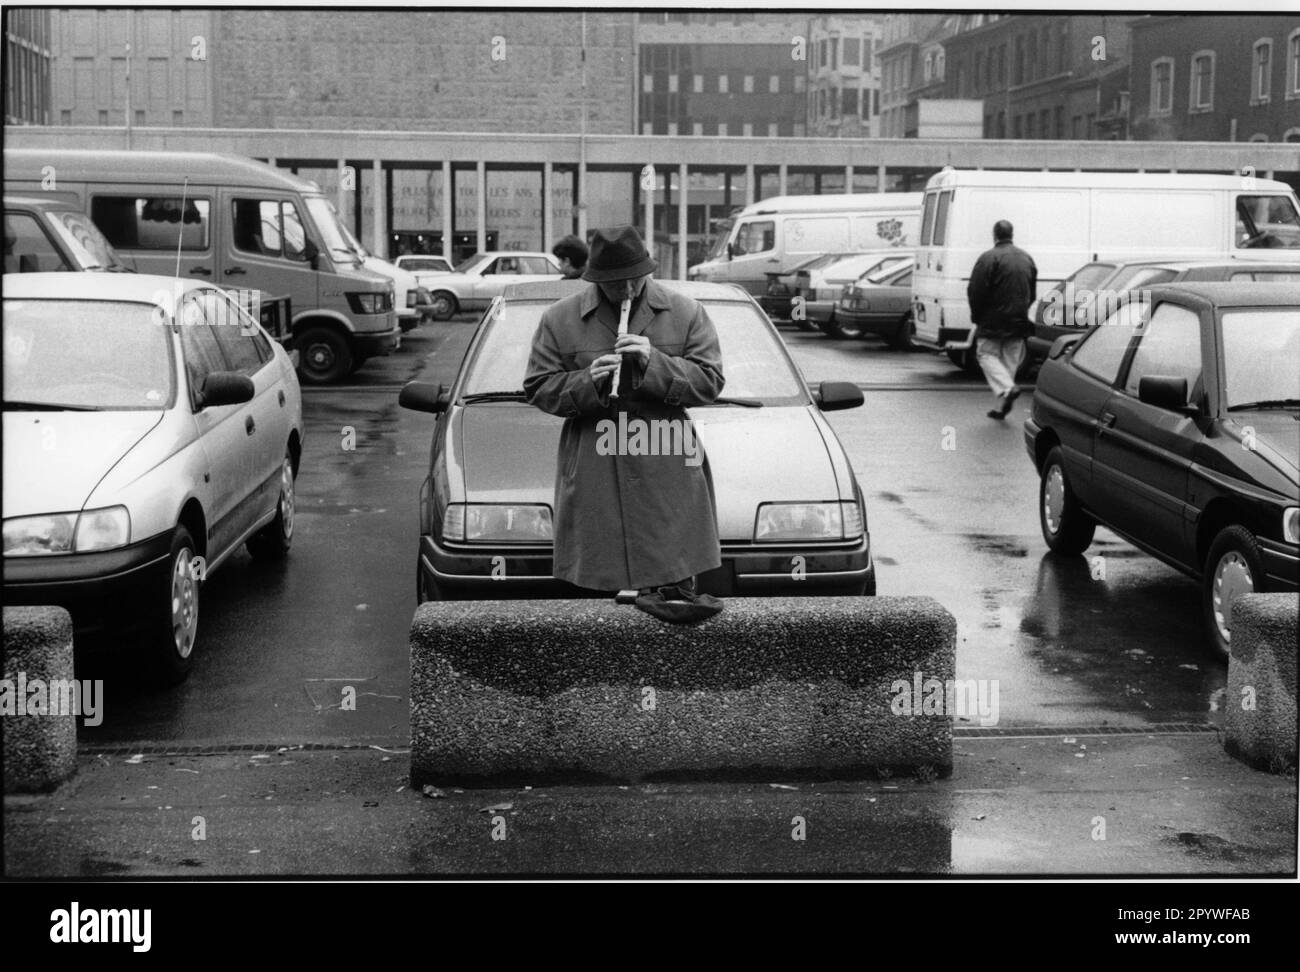 Liège (Belgique), musique de rue, flûte. Un homme joue la flûte dans un parking. Scène de rue, noir et blanc. Photo, 1993. Banque D'Images